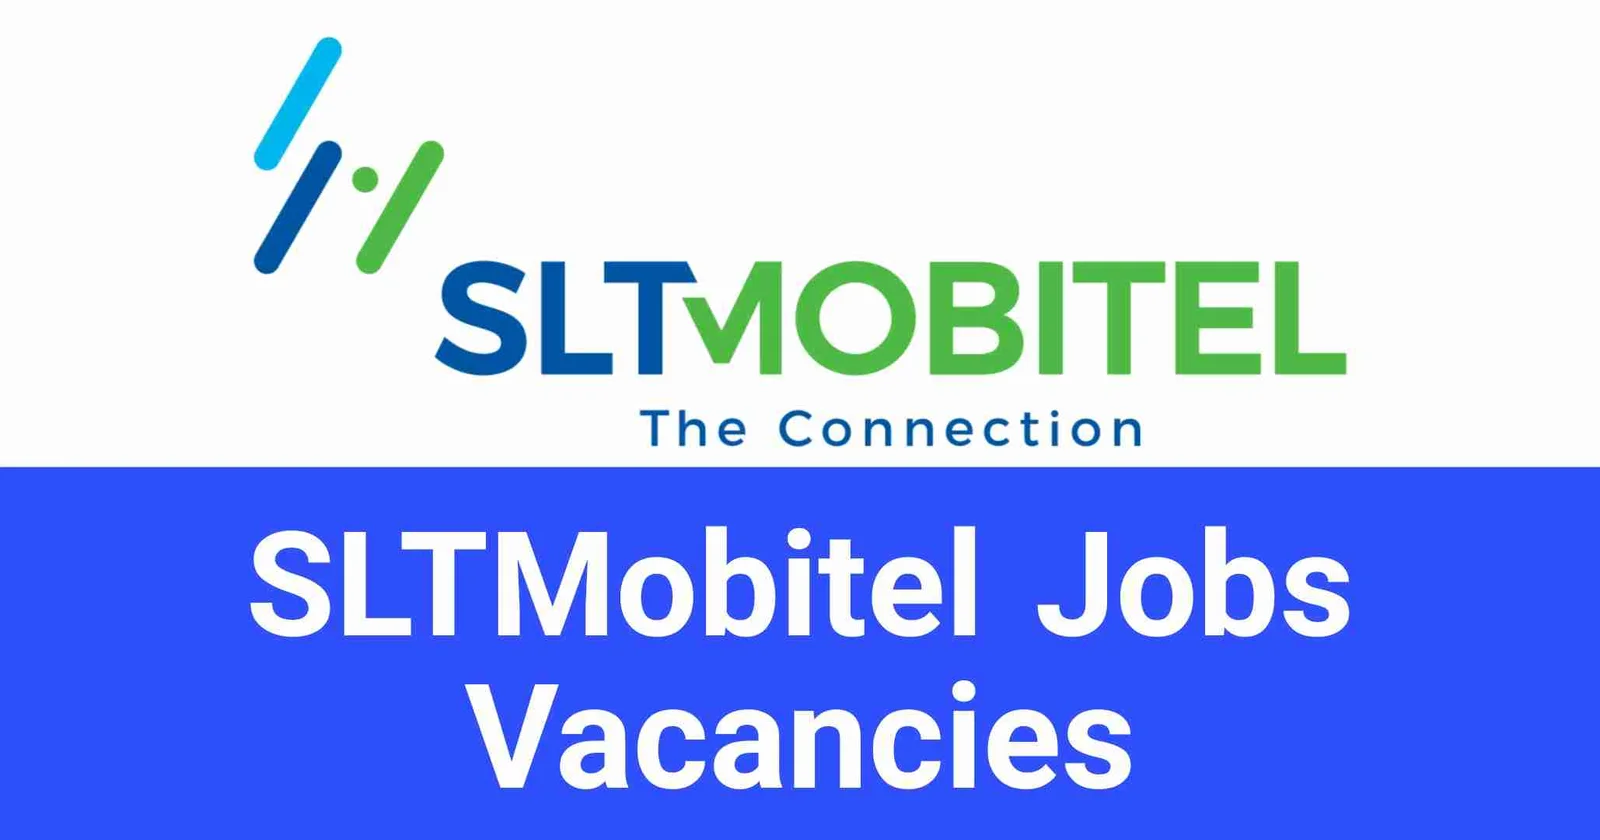 SLTMobitel Jobs Vacancies